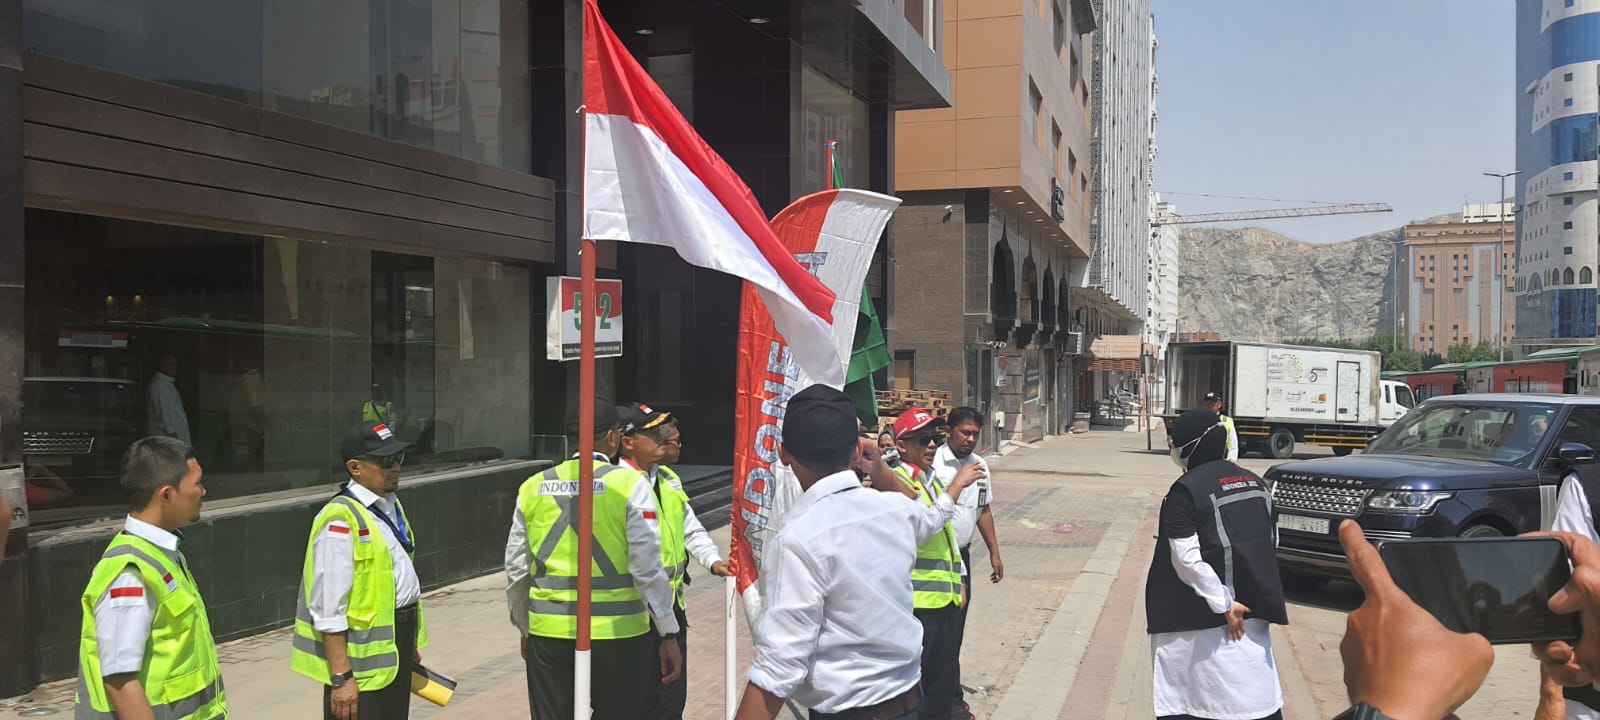 Suasana di depan hotel jemaah haji di Makkah